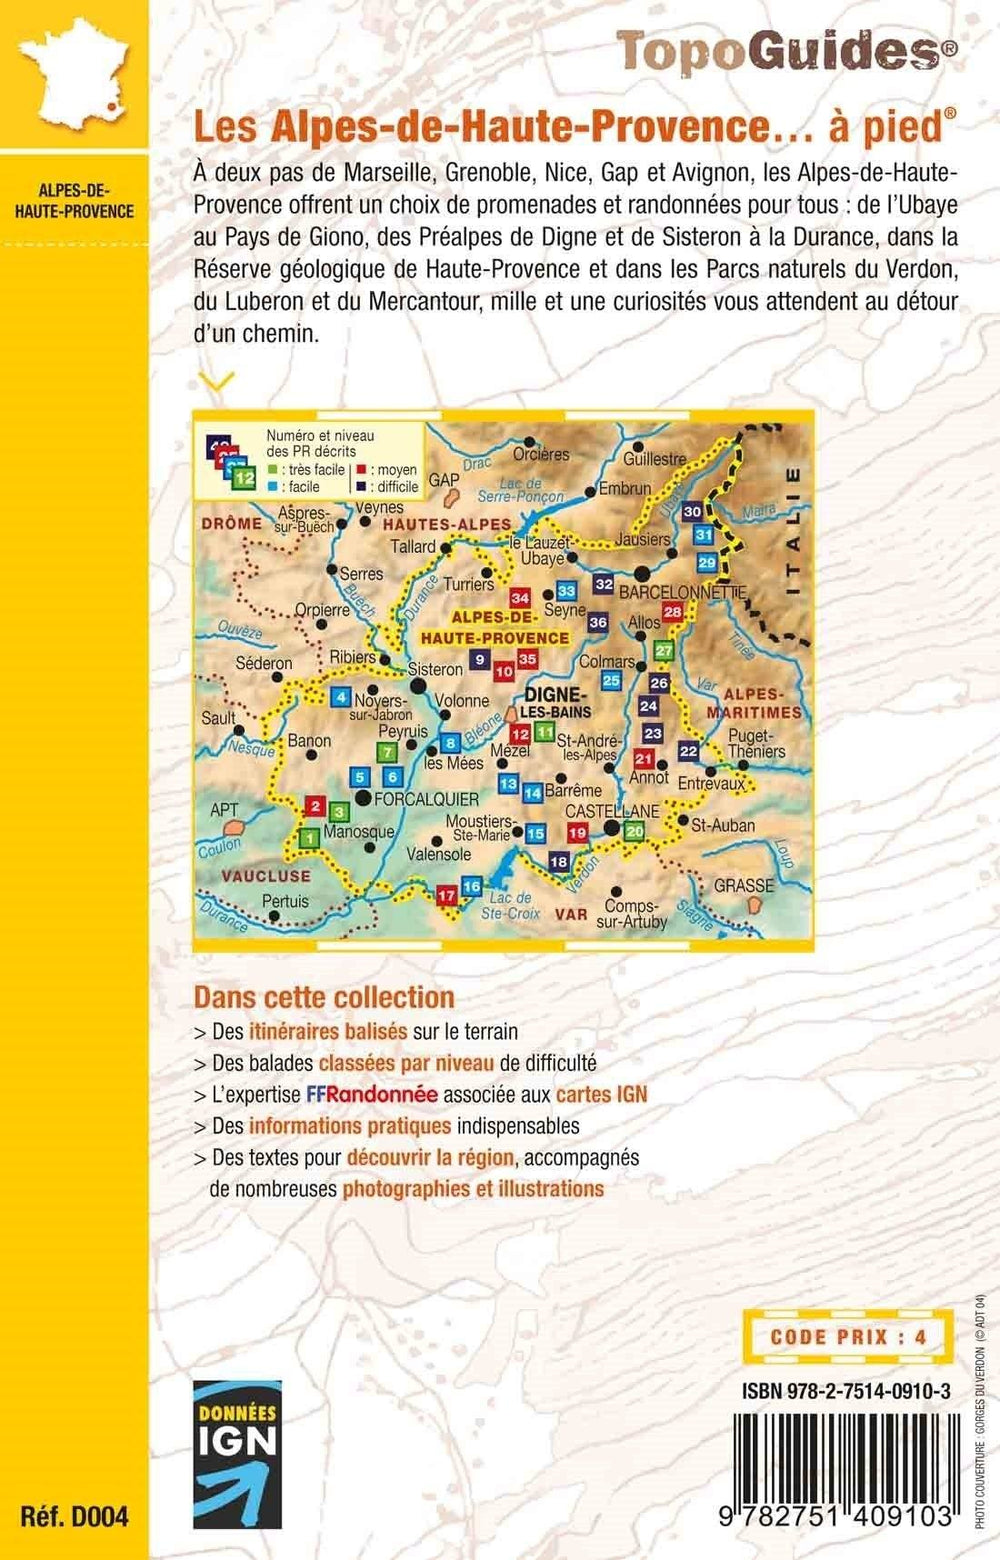 Topoguide de randonnée - Les Alpes-de-Haute-Provence à pied | FFR guide de randonnée FFR - Fédération Française de Randonnée 